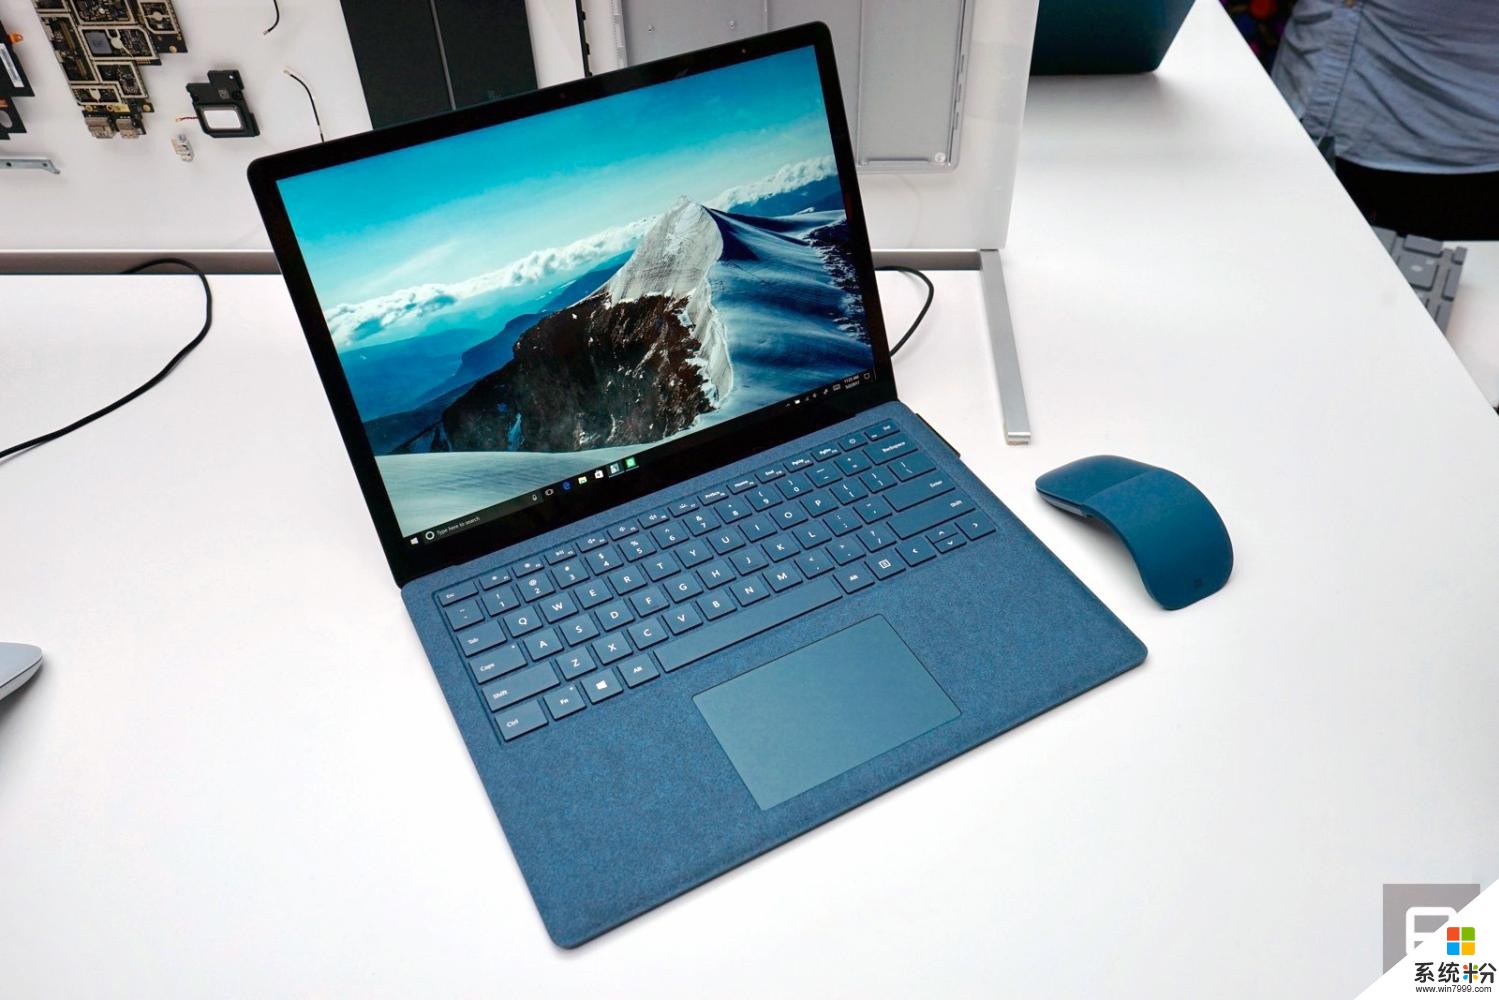 显然, 微软觉得 Surface Laptop 不需要什么“花活”来吸引眼球(1)